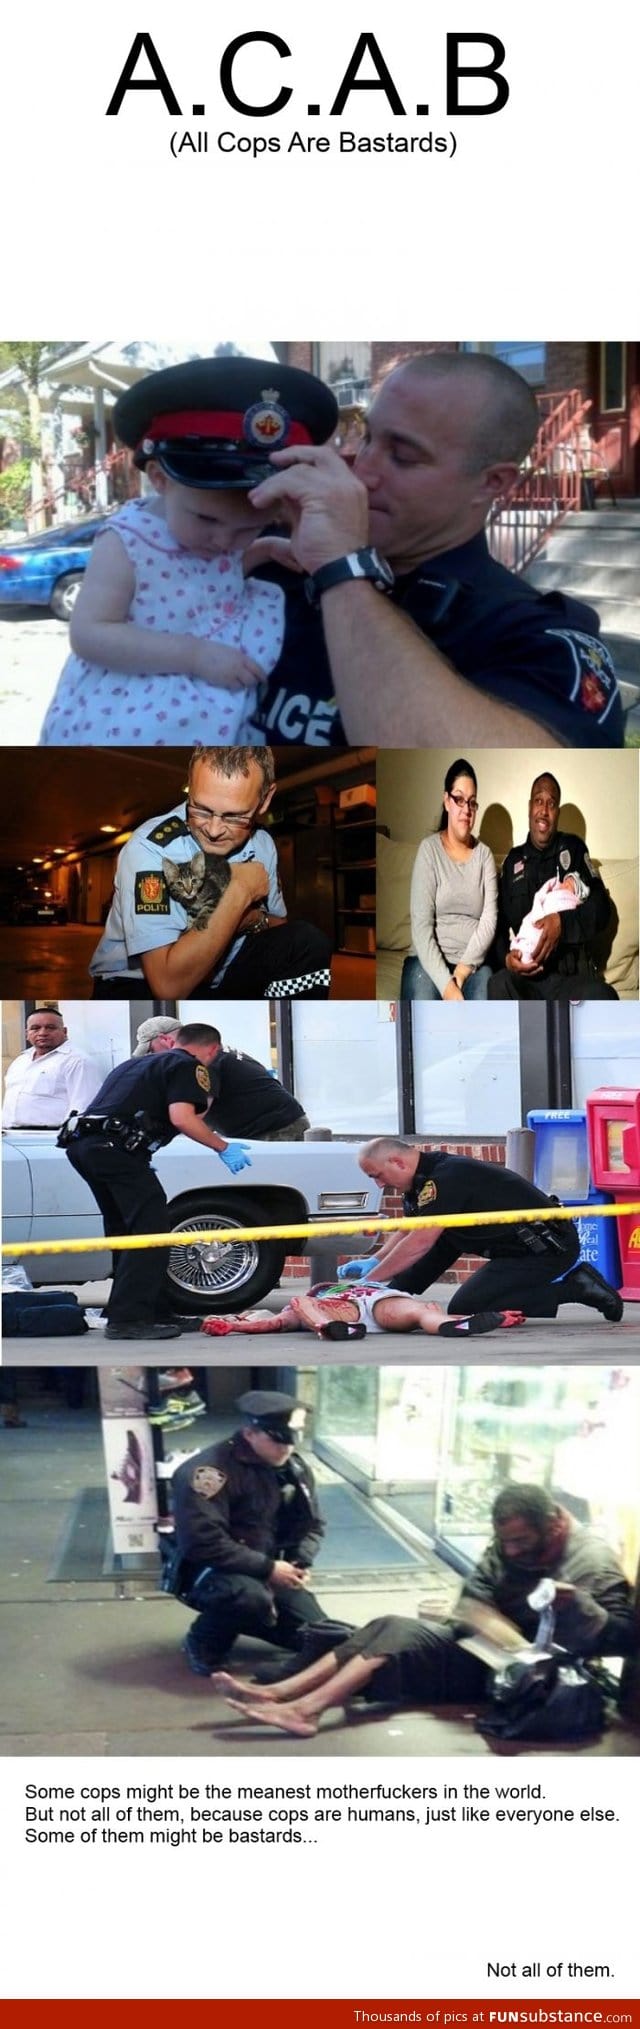 Kind cops